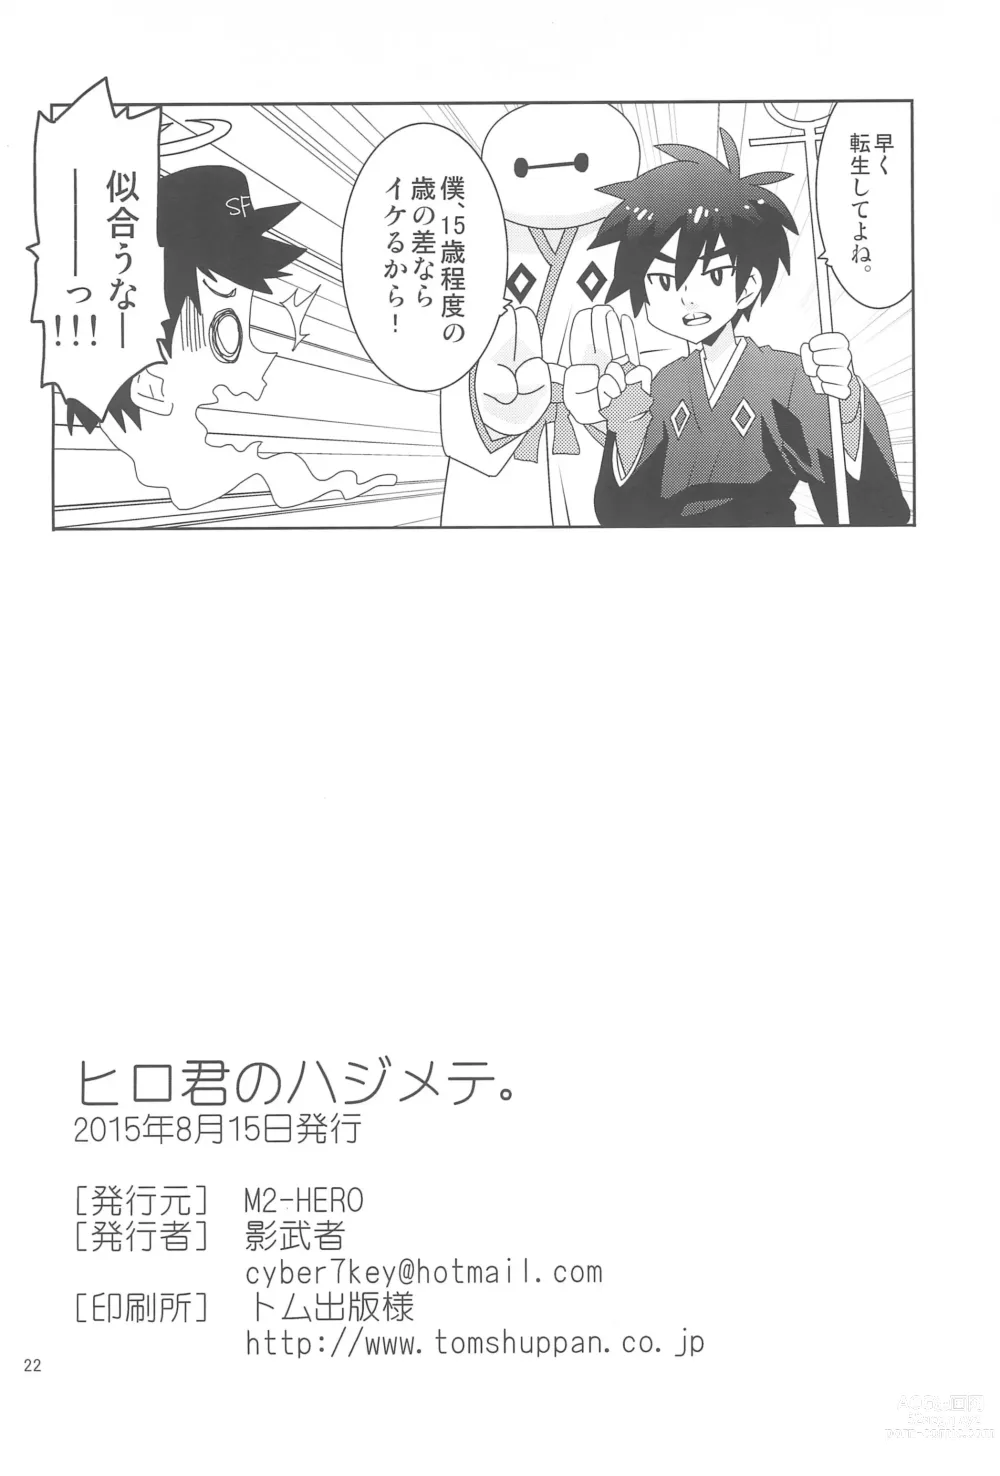 Page 22 of doujinshi Hiro-kun no Hajimete.